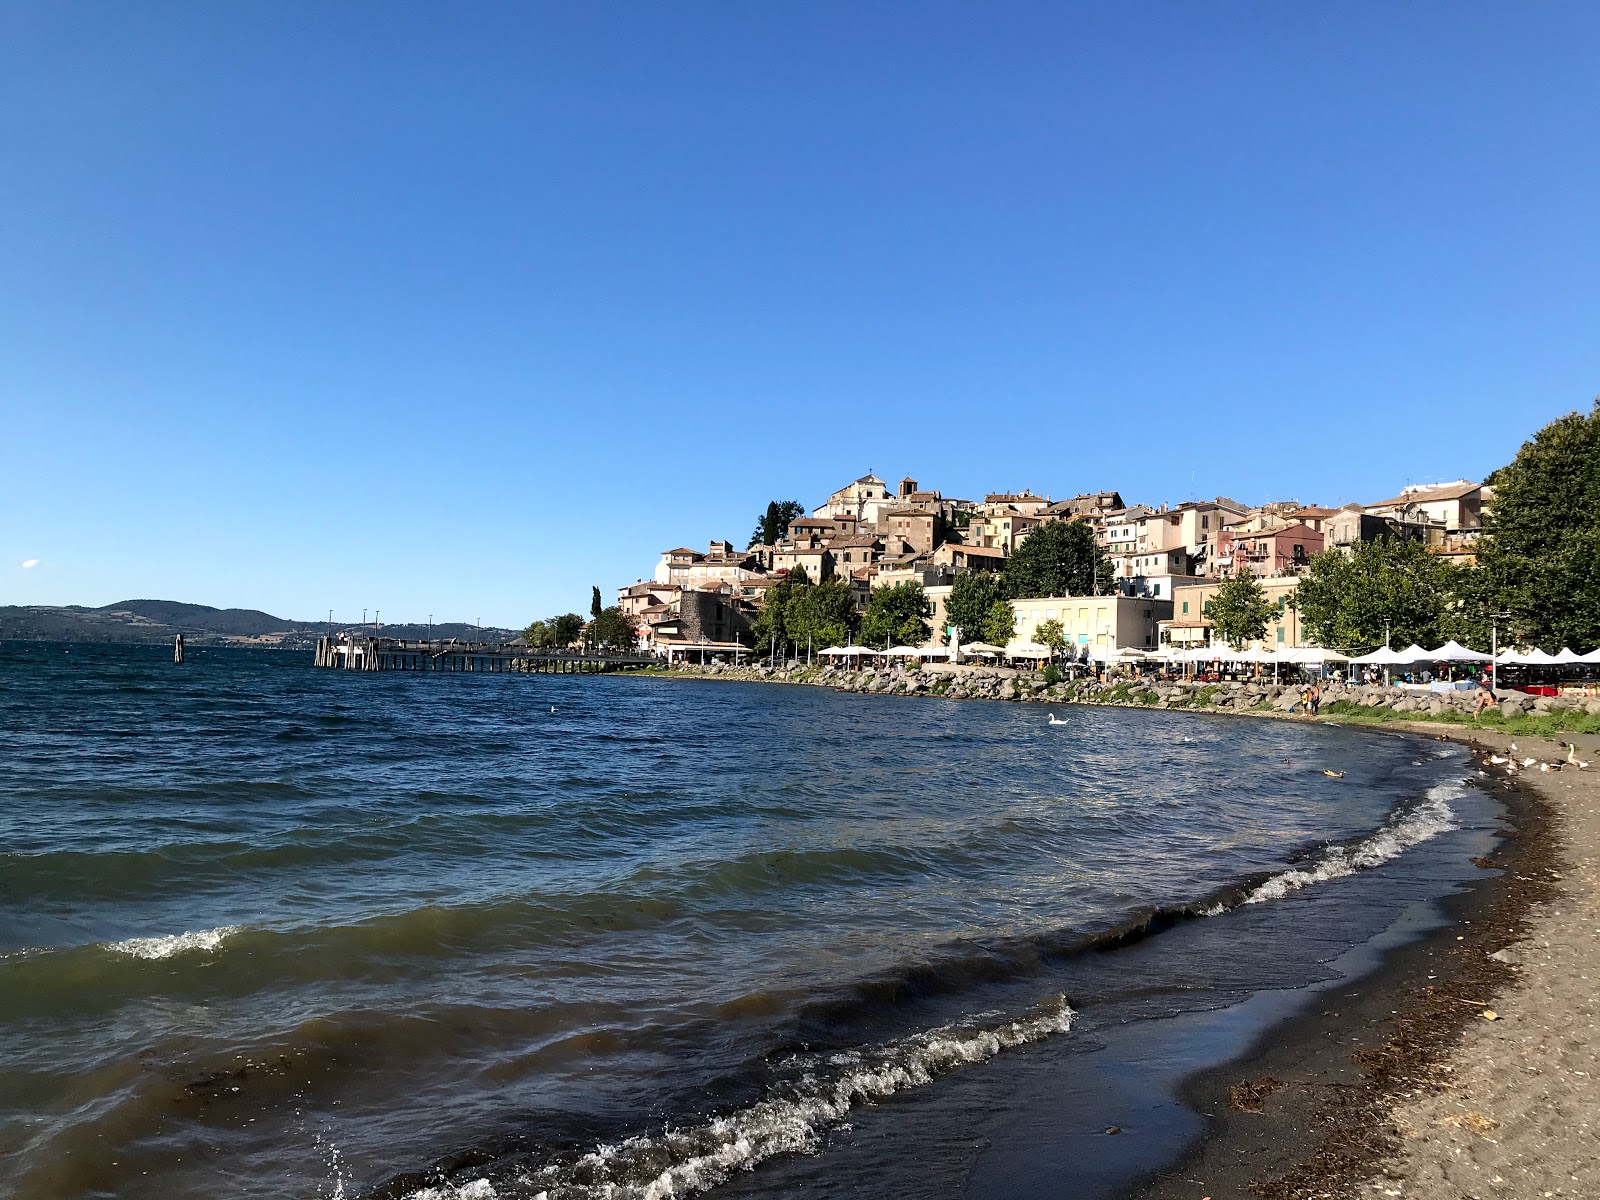 Foto von Spiaggia Libera - beliebter Ort unter Entspannungskennern